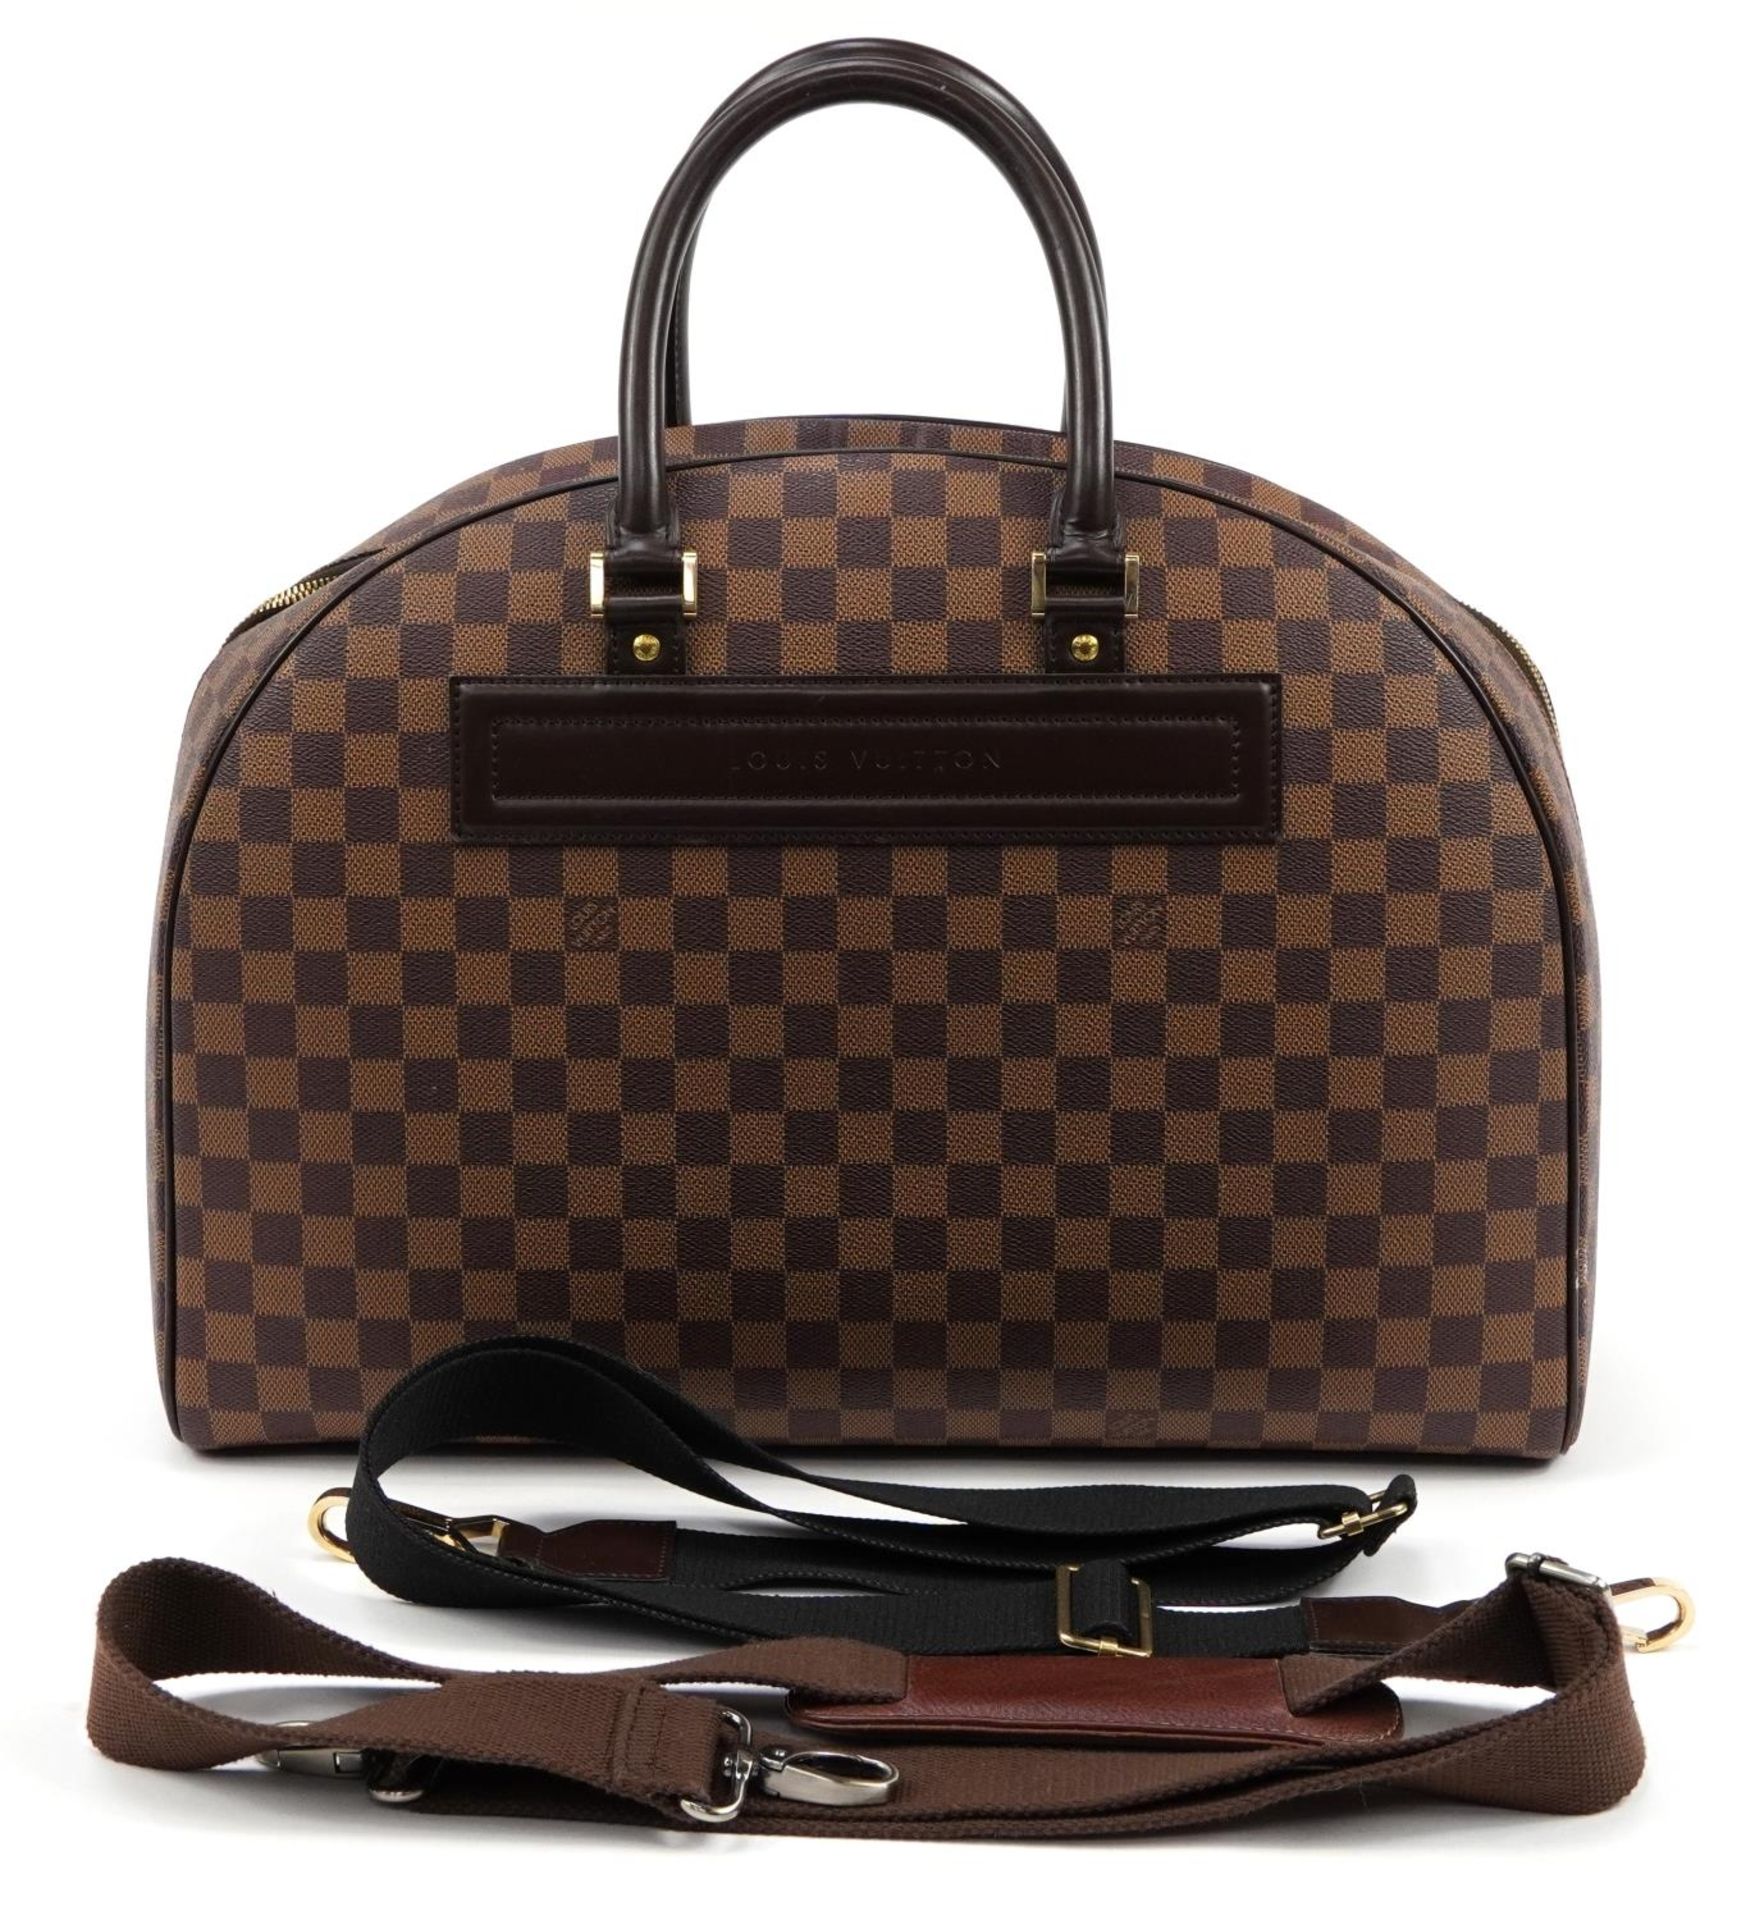 Louis Vuitton Damier Ebene Nolita satchel bag with two canvas straps, date code SP0939, 32cm x 44.